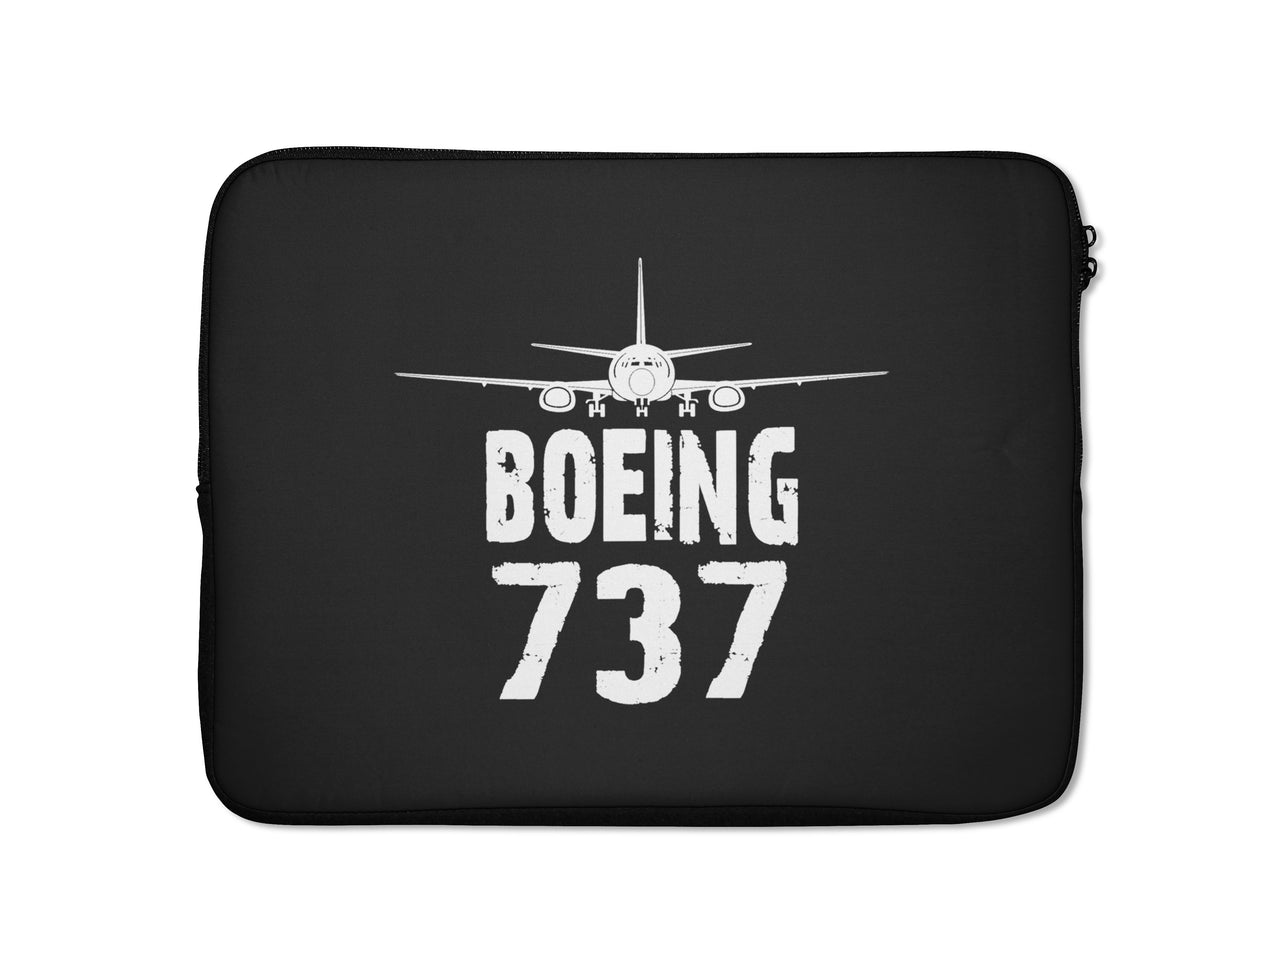 Boeing 737 & Plane Designed Laptop & Tablet Cases